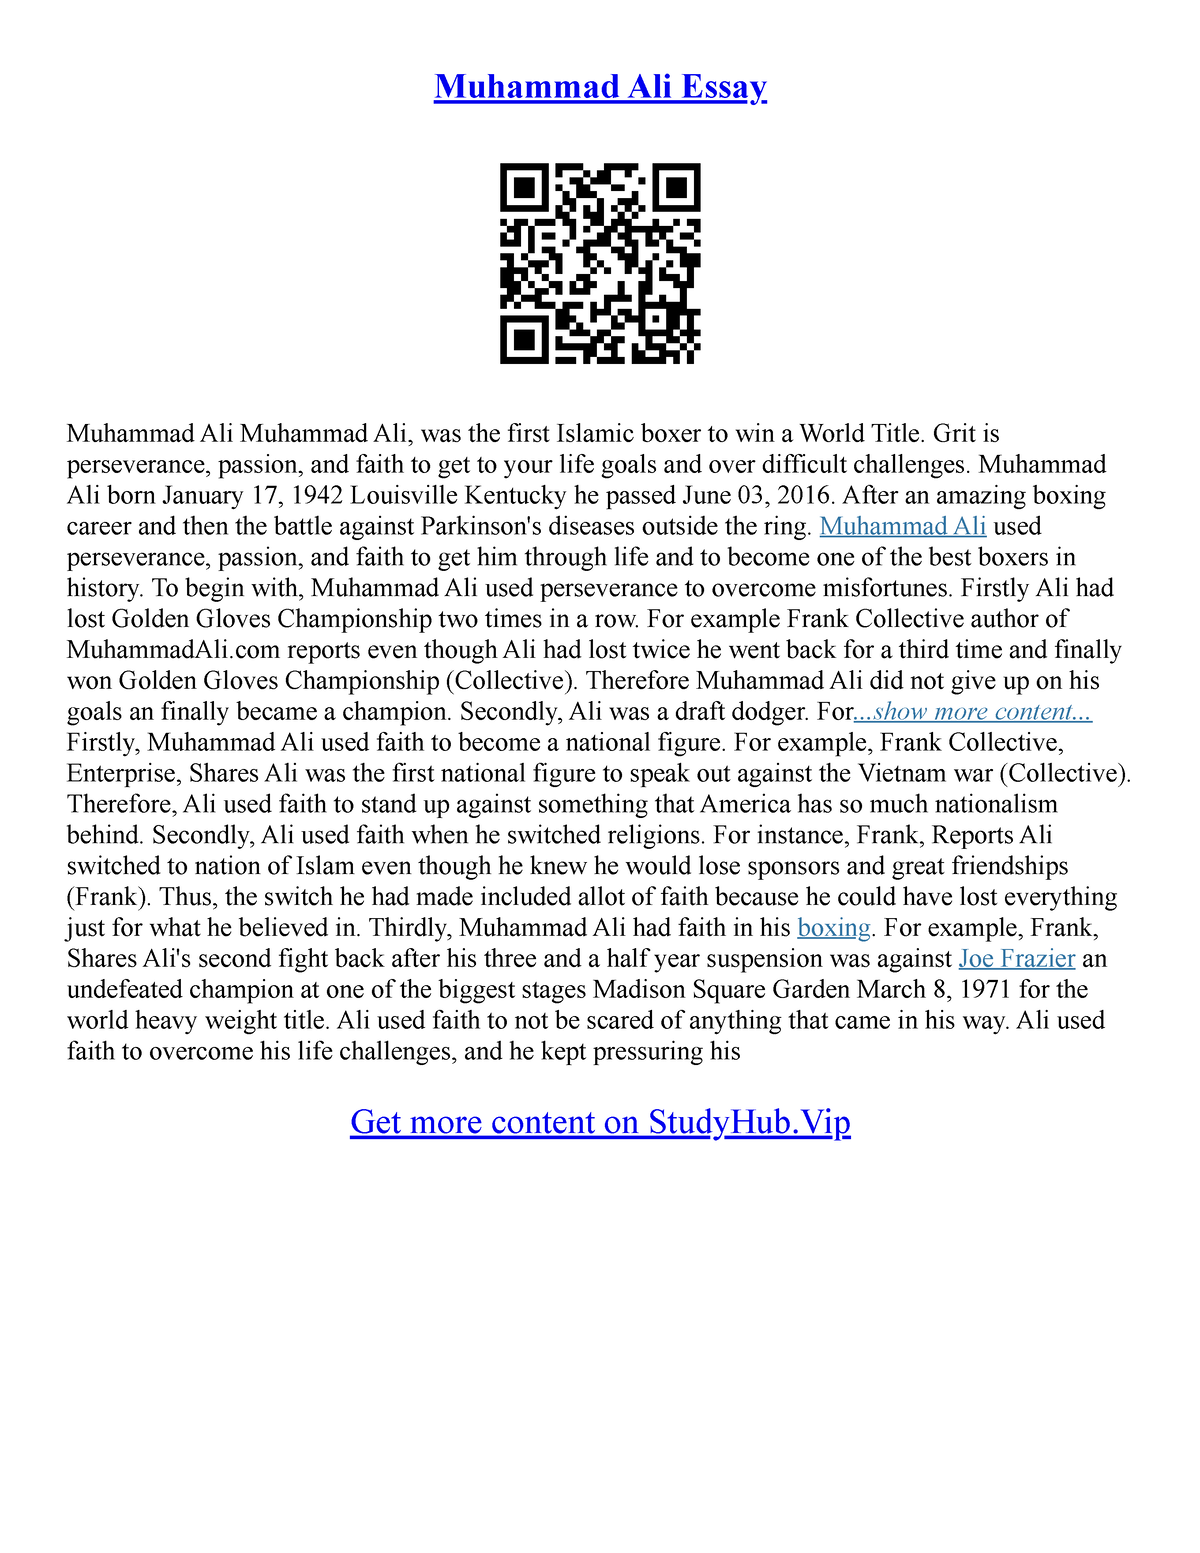 short essay about muhammad ali